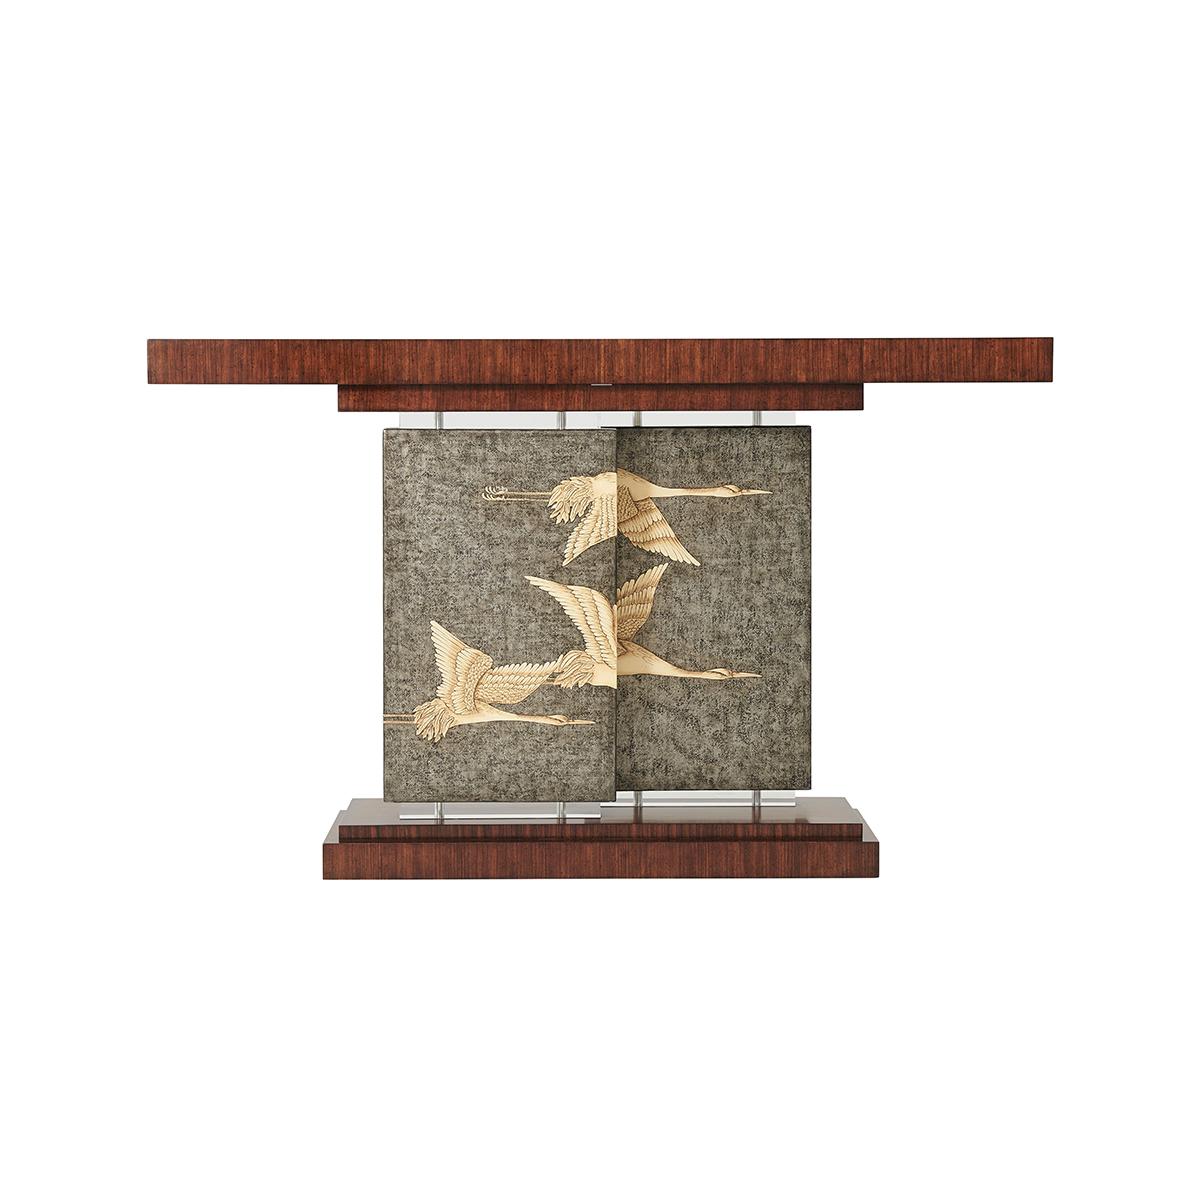 Hyedua-furnierter Konsolentisch im Deco-Stil. Die rechteckige Platte wird von zwei versetzten Argento-Platten aus Zinn getragen, die mit fliegenden Kranichen handbemalt sind, und mit Acryl-Basen und -Kapitellen versehen sind.

Abmessungen: 60